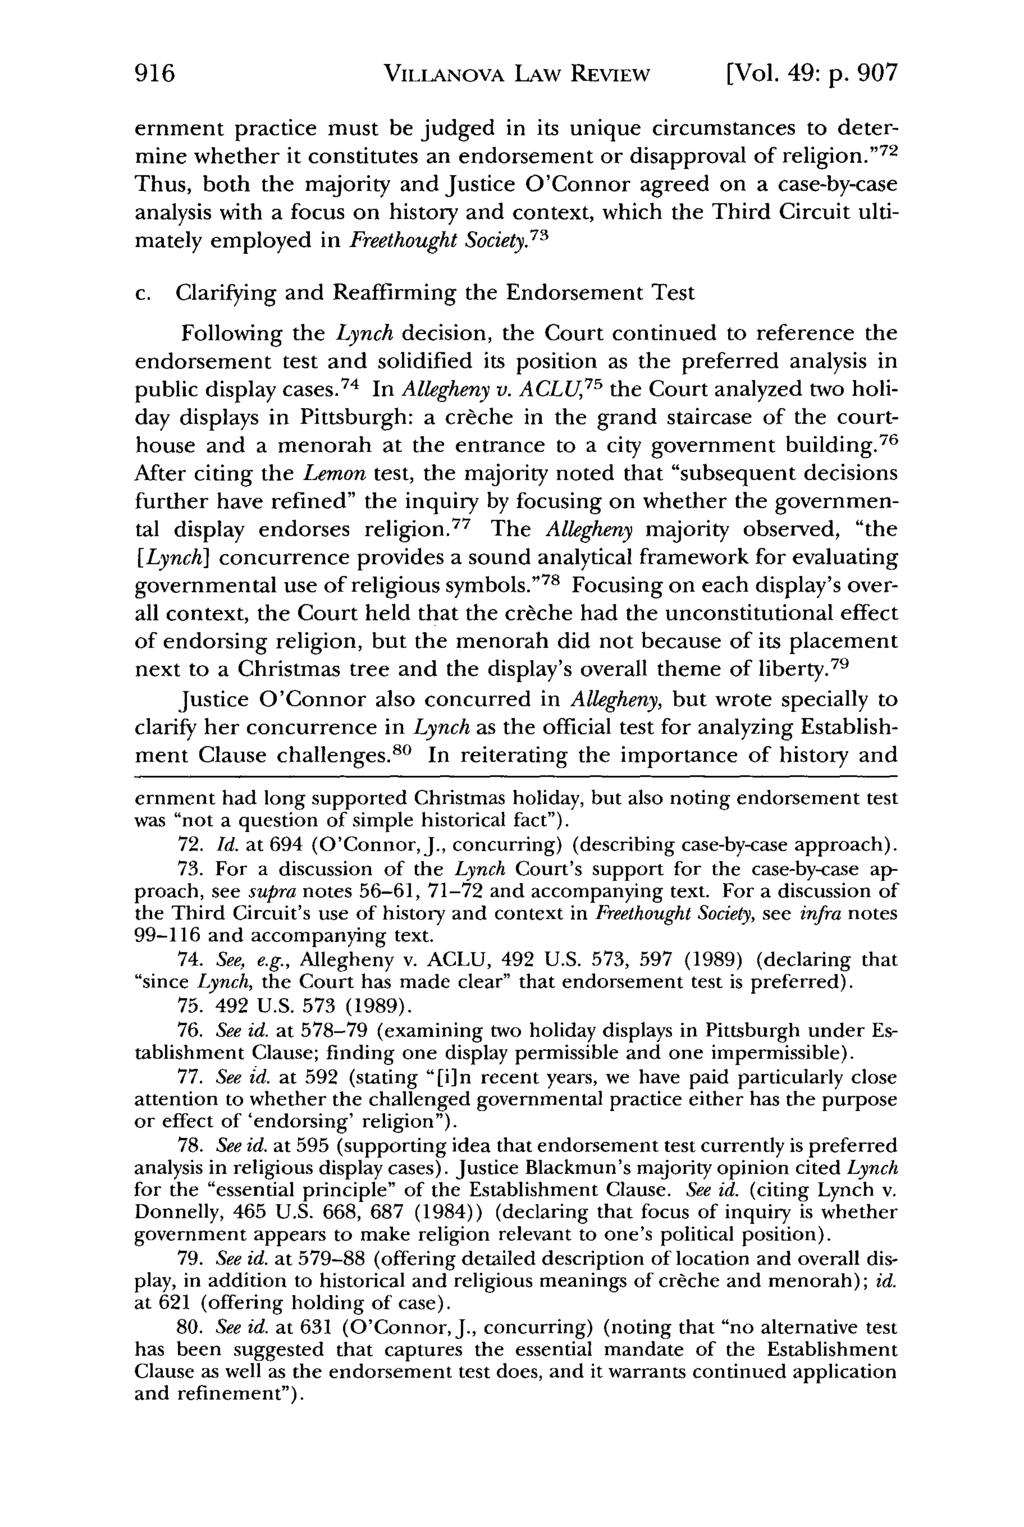 Villanova Law Review, Vol. 49, Iss. 5 [2004], Art. 2 VILLANOVA LAW REVIEW [Vol. 49: p.